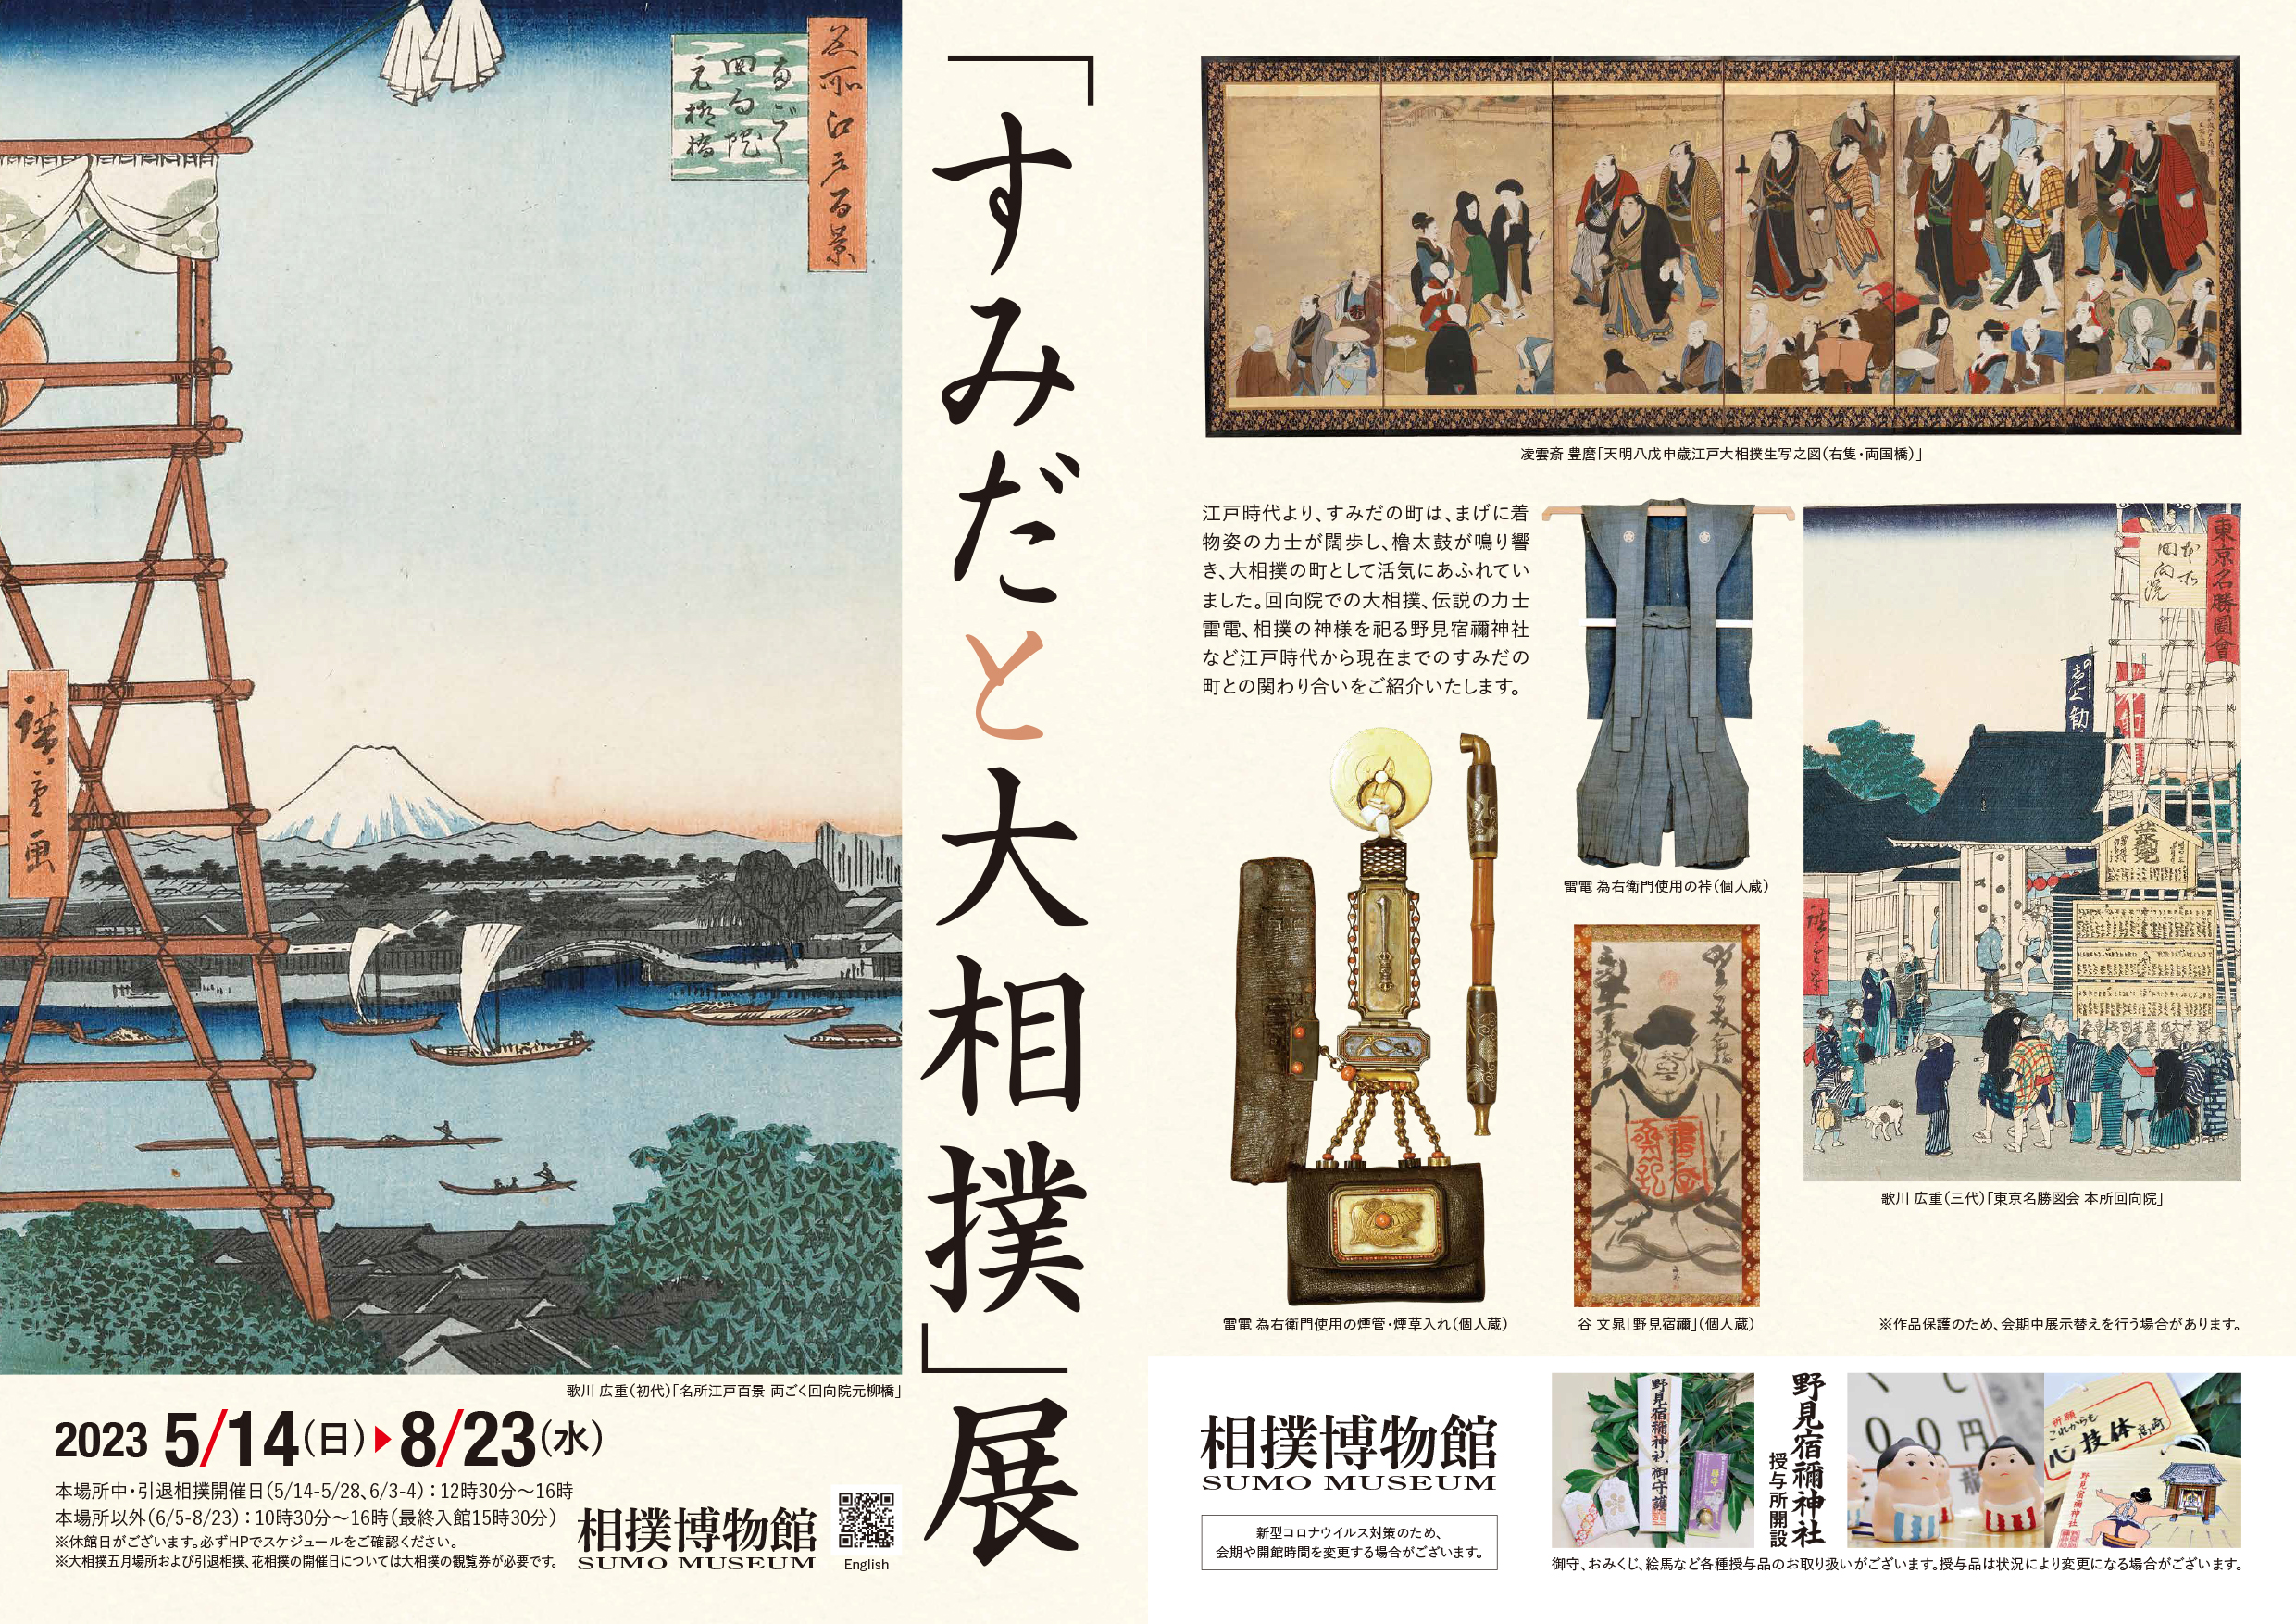 すみだと大相撲」展 - 日本相撲協会公式サイト